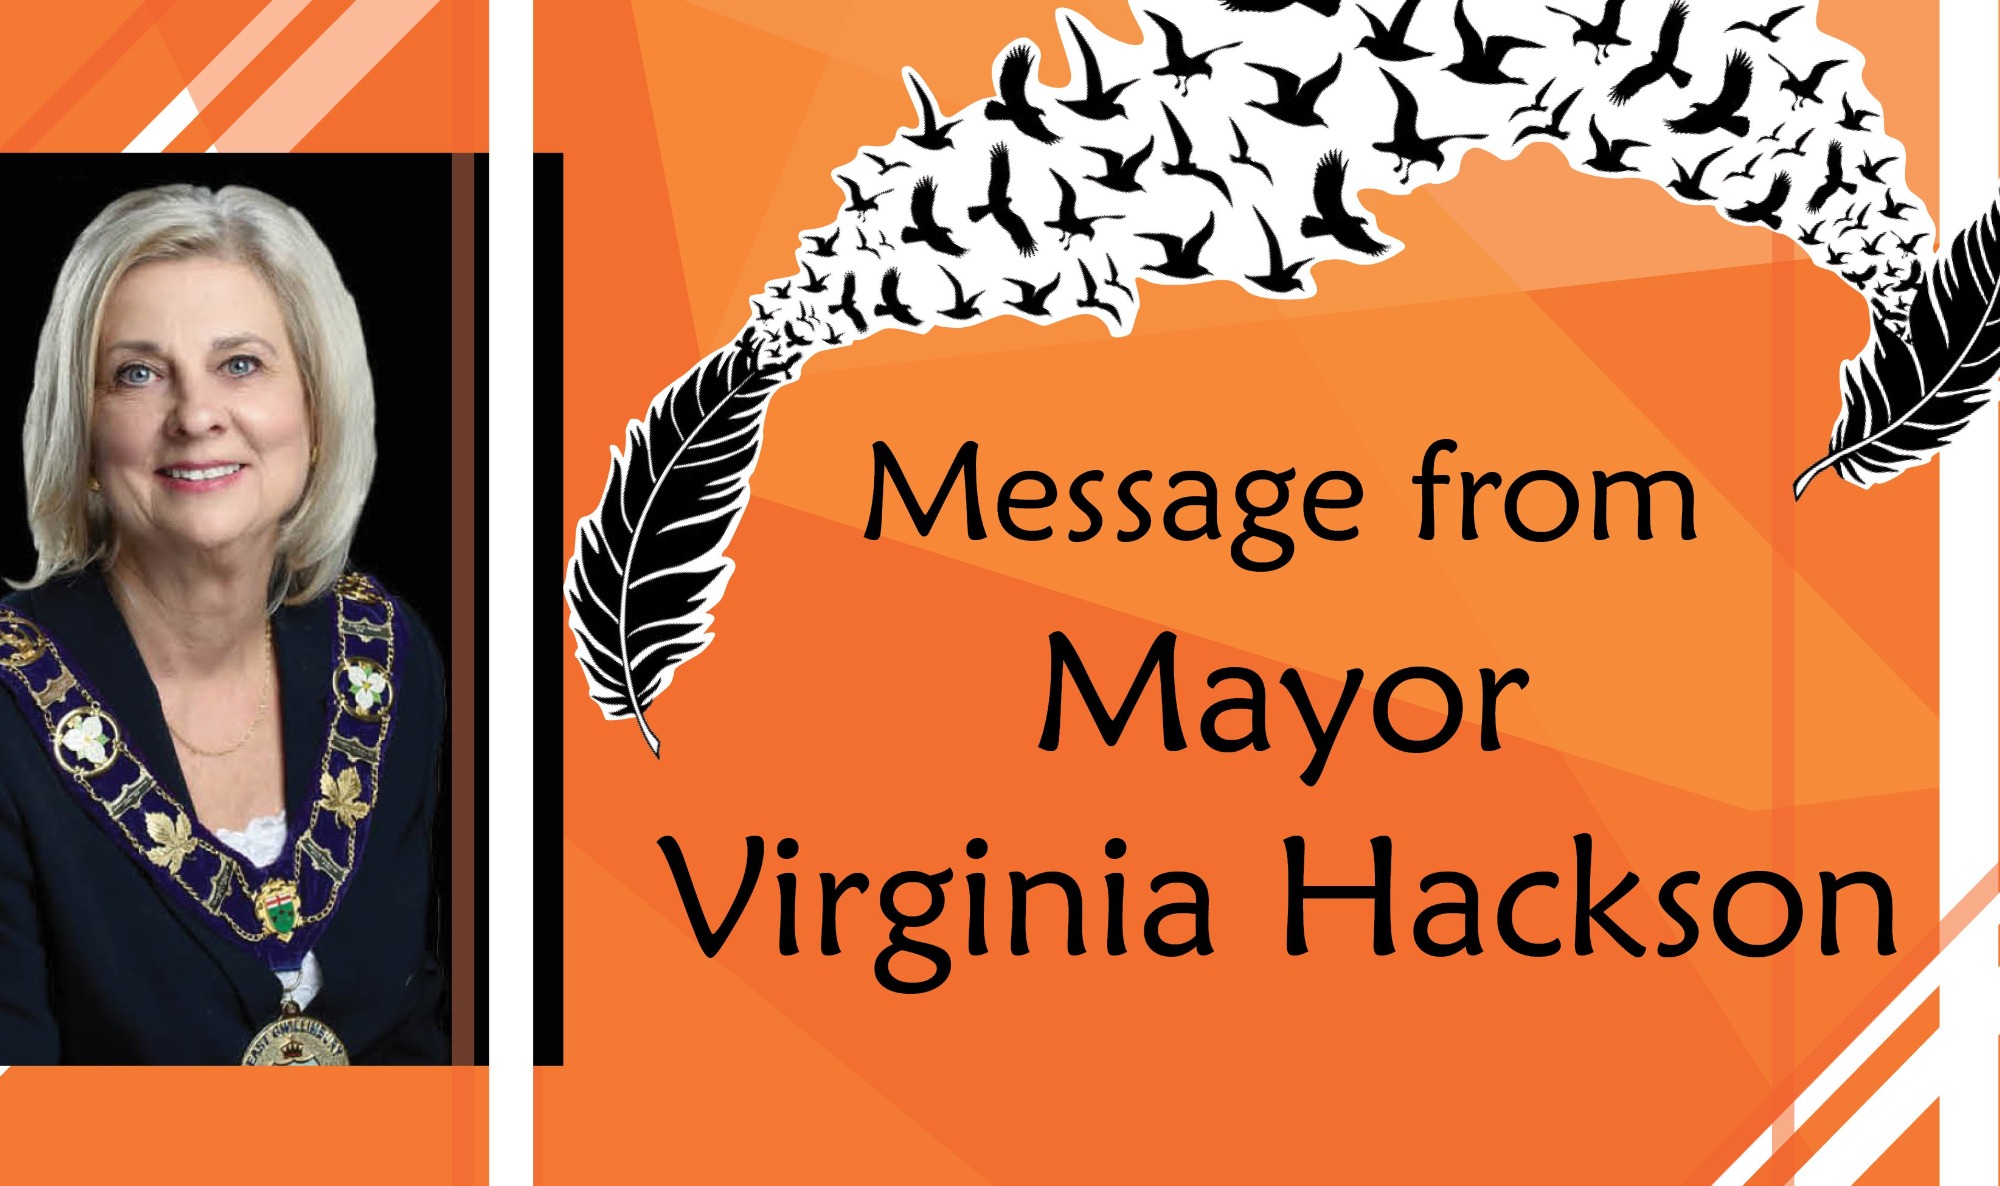 Mayor Virginia Hackson on orange background